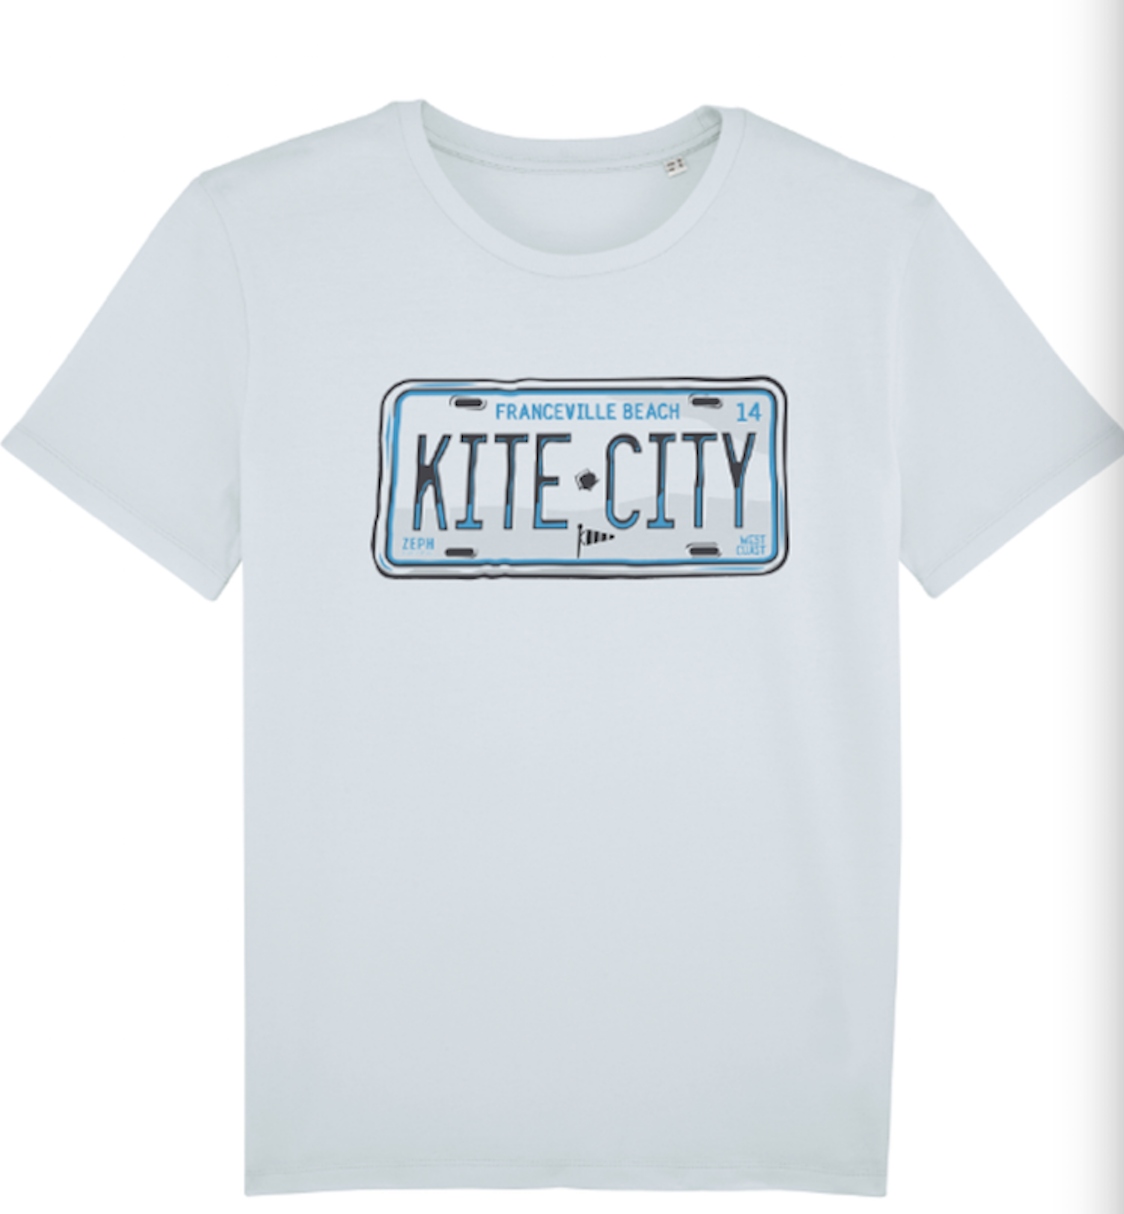 T-shirt Kitecity